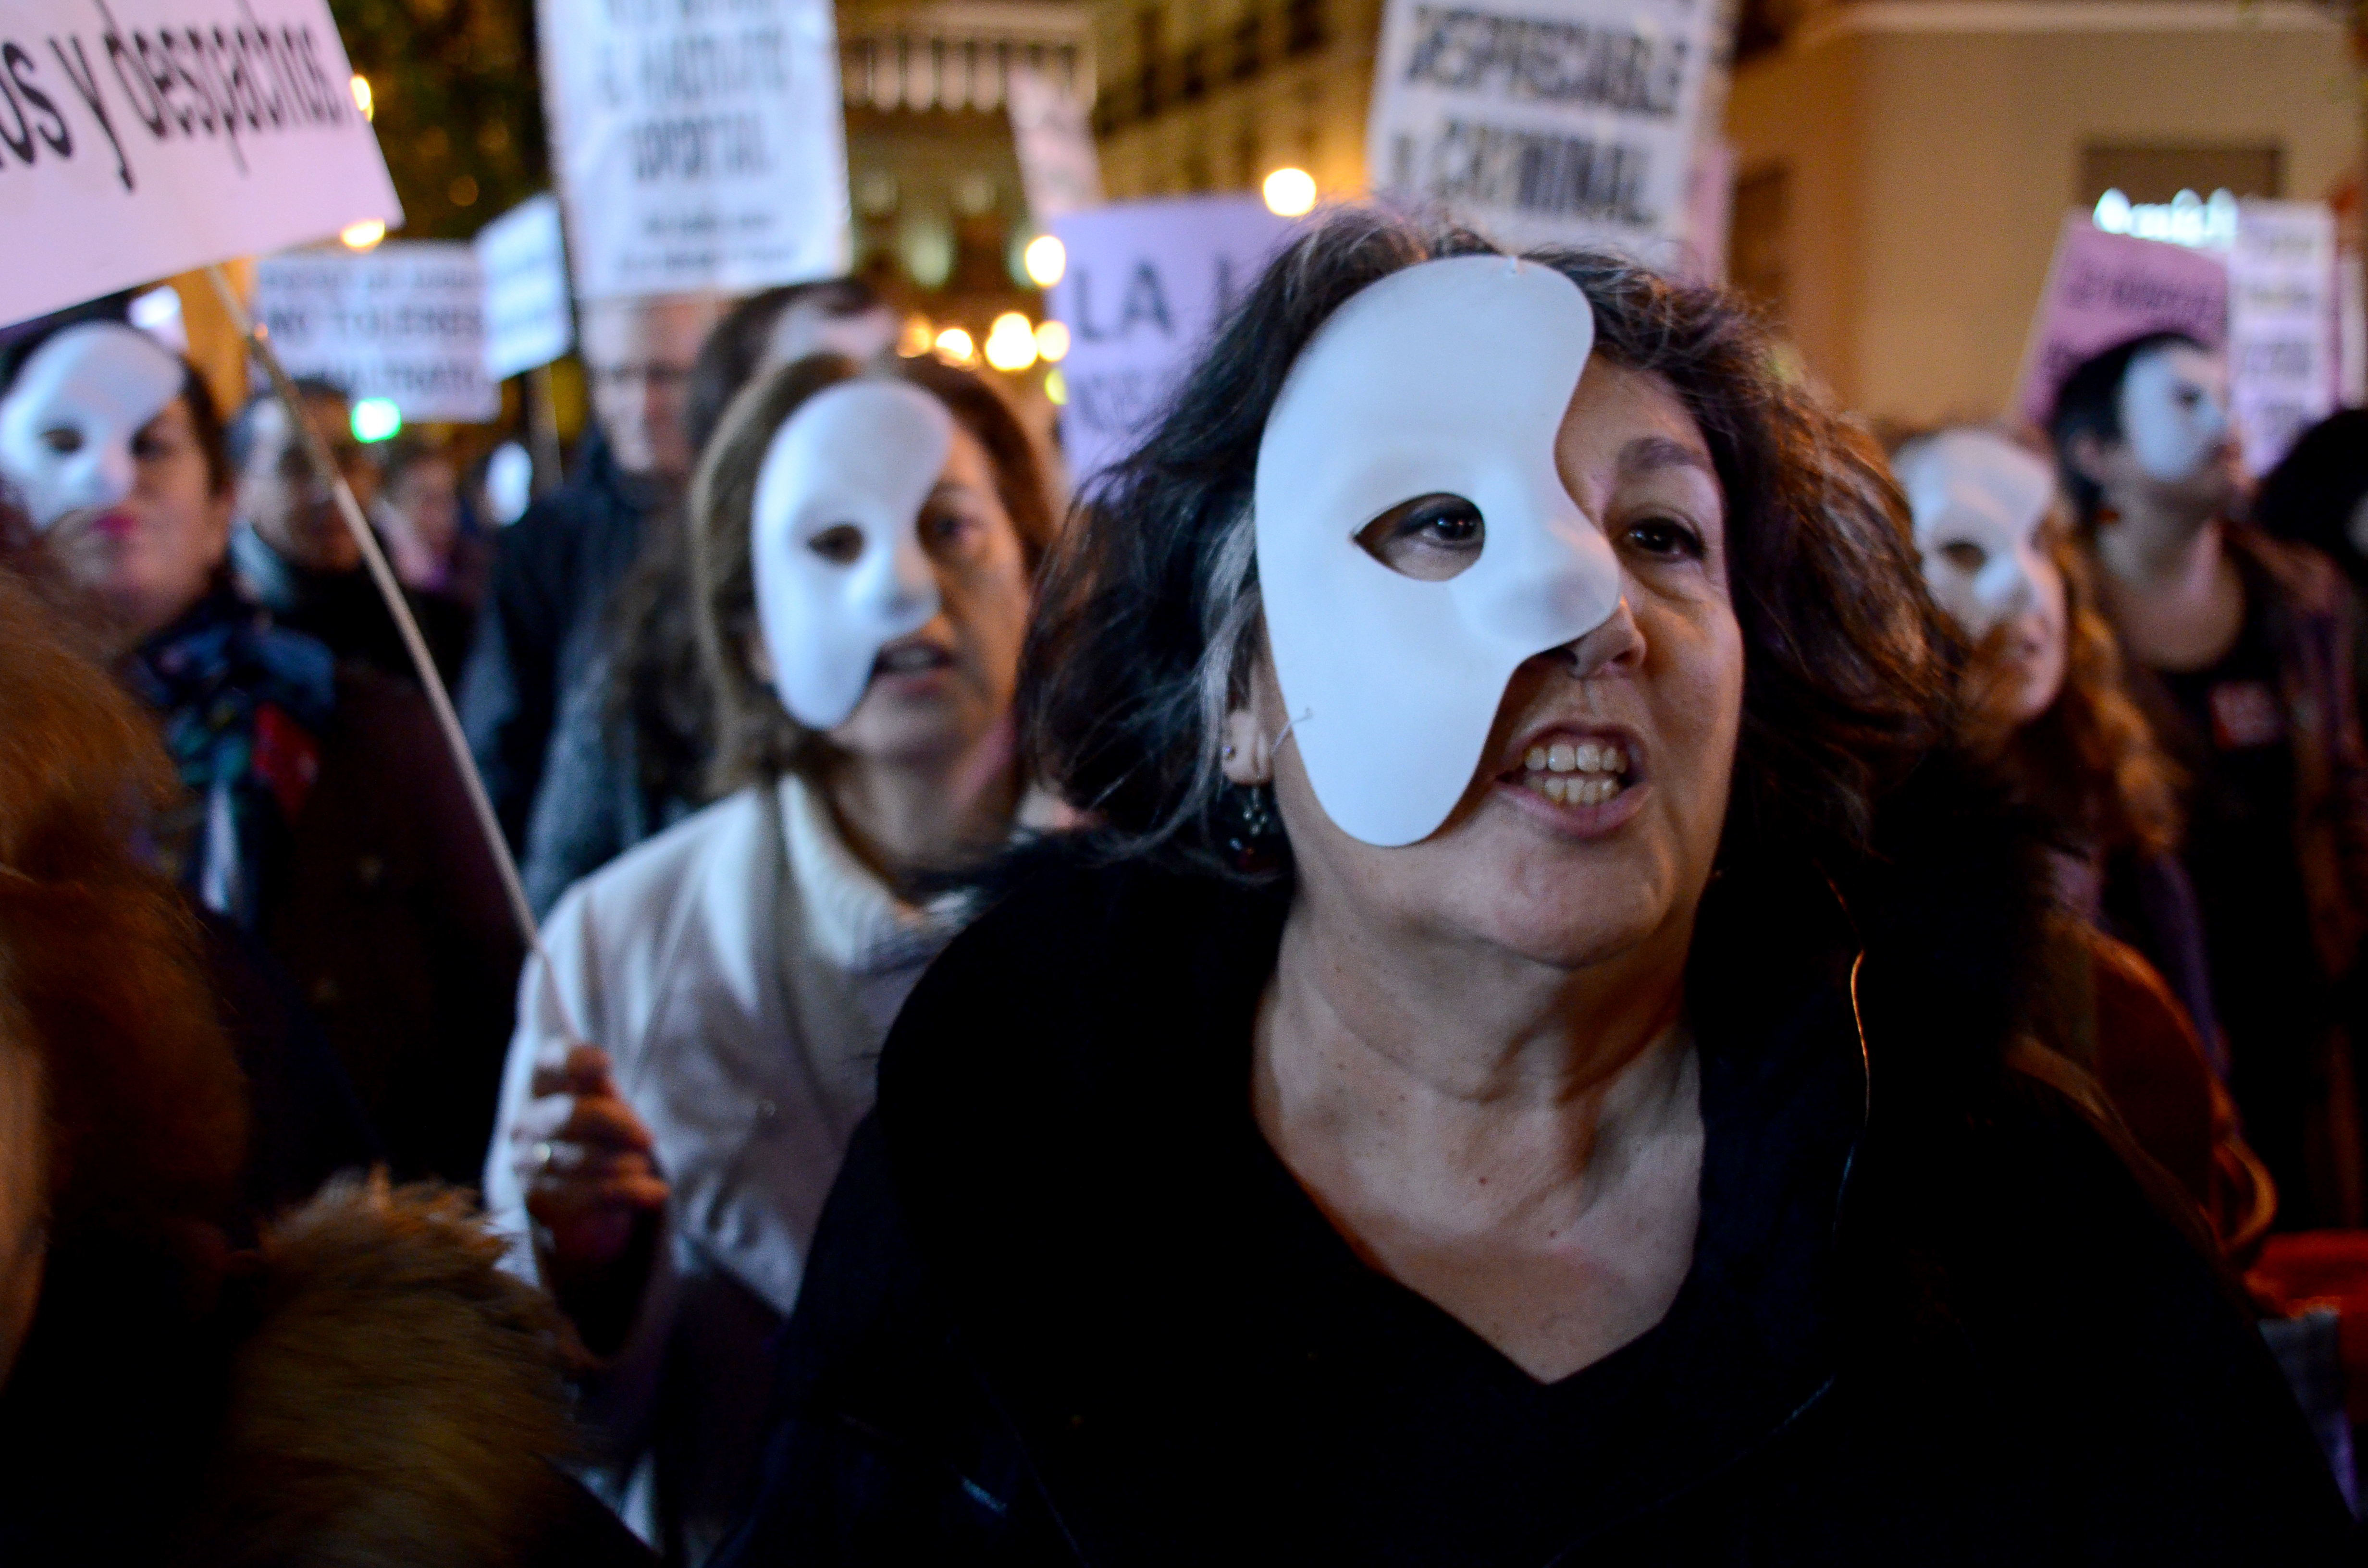 Hundreds protest against gender violence in Madrid